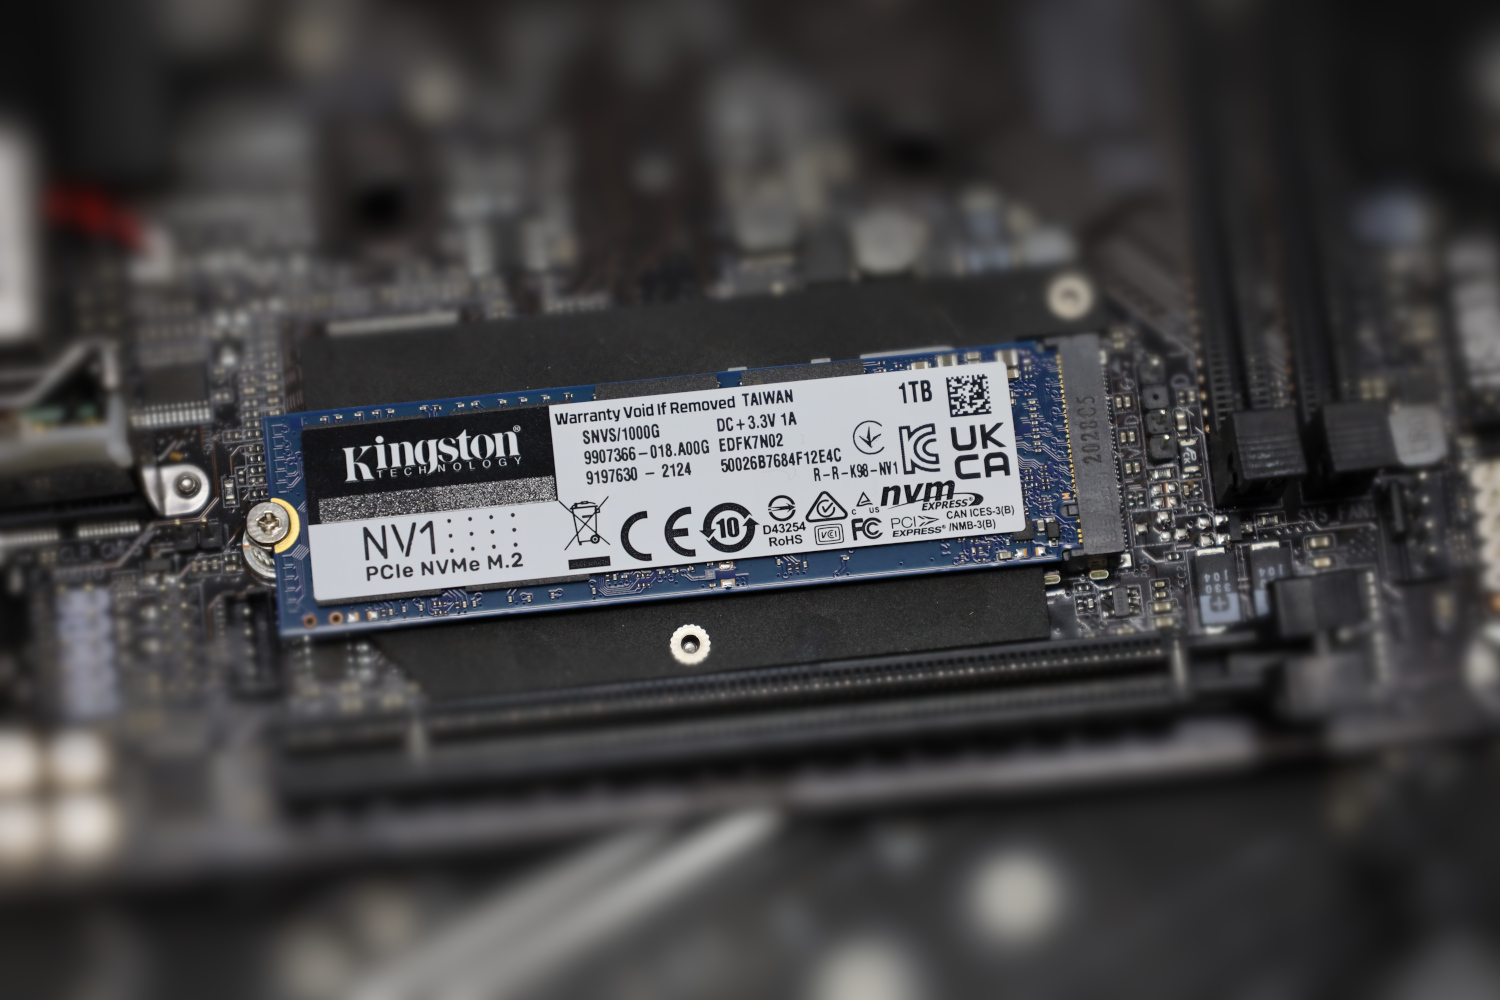 Kingston 1TB NVMe SSD - ServeTheHome